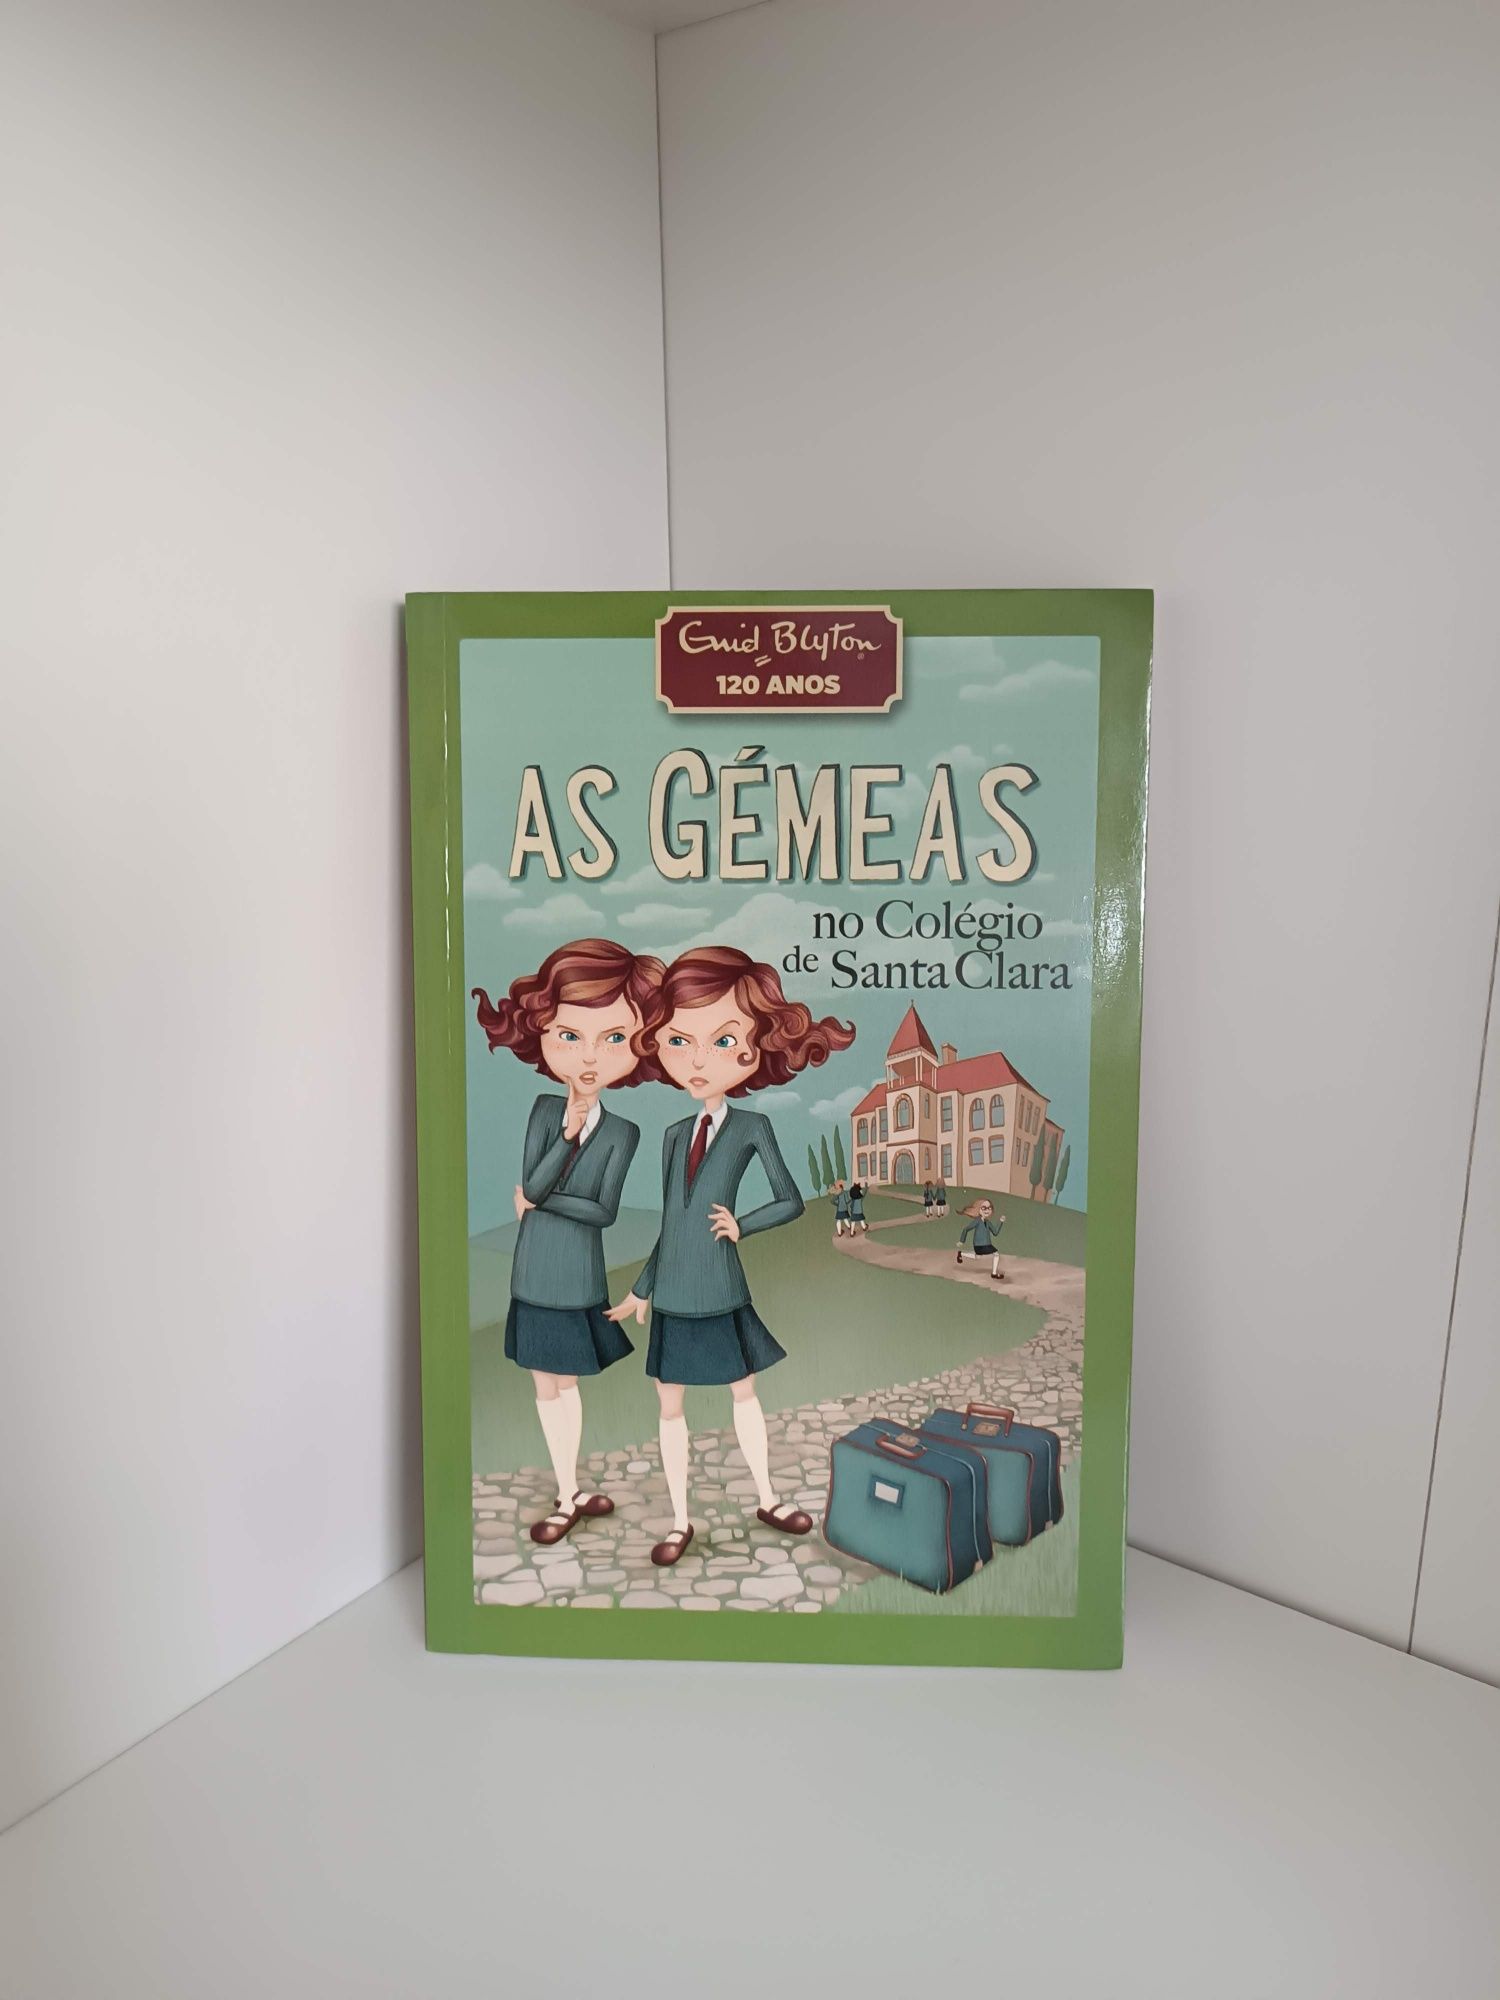 Livro " As gémeas no colégio de santa clara"